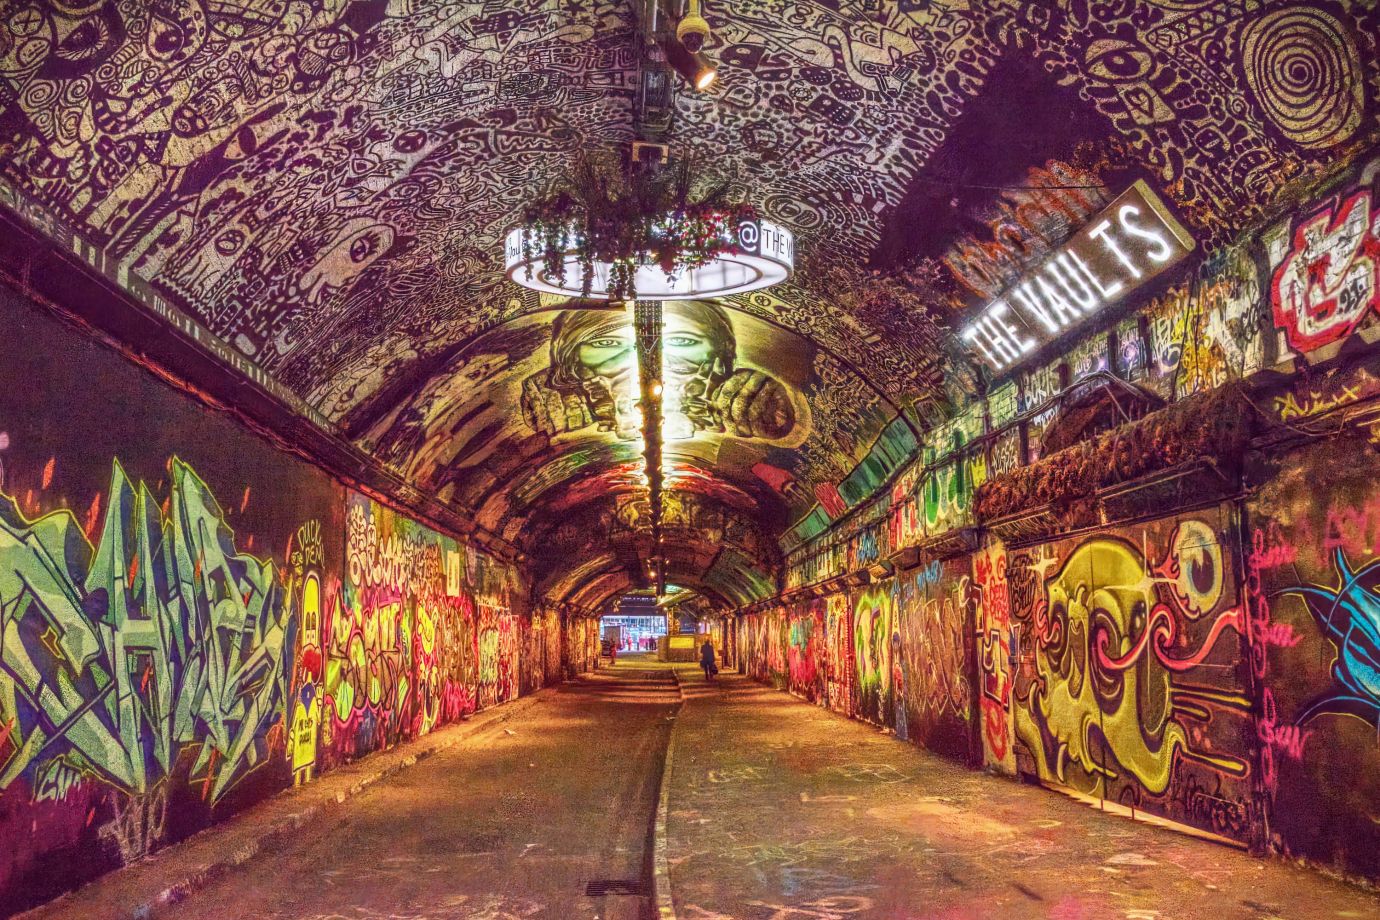 Vaults-graffiti-Waterloo-London-2828-30032022